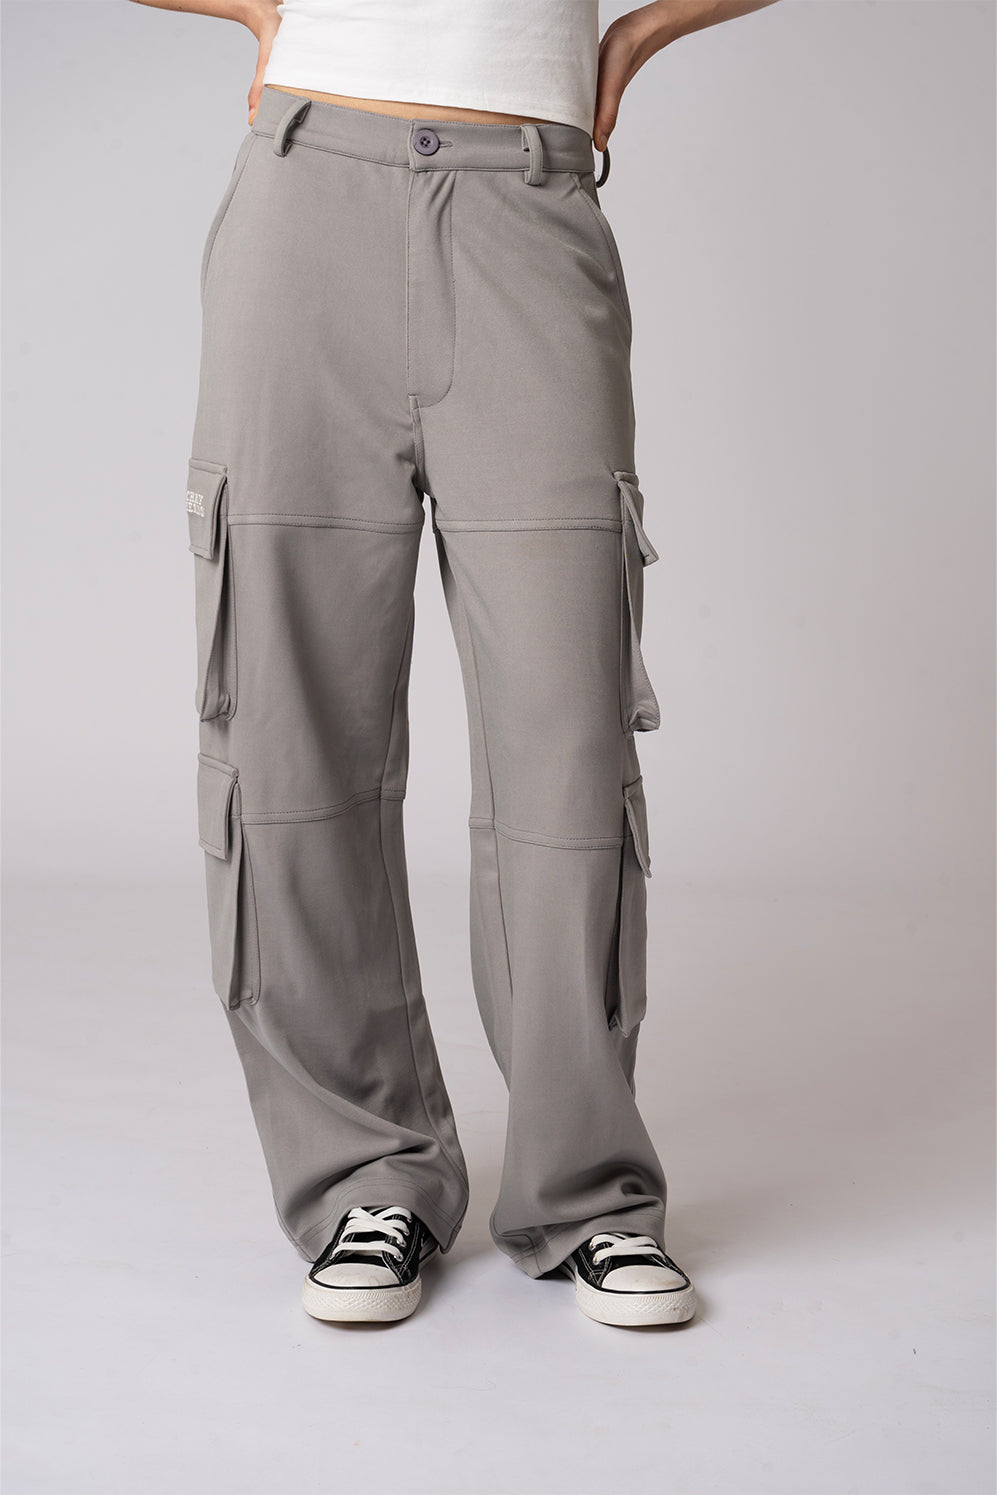 Woven Cargo Utility Pocket Pants | Pocket pants, Pants, Pants for women